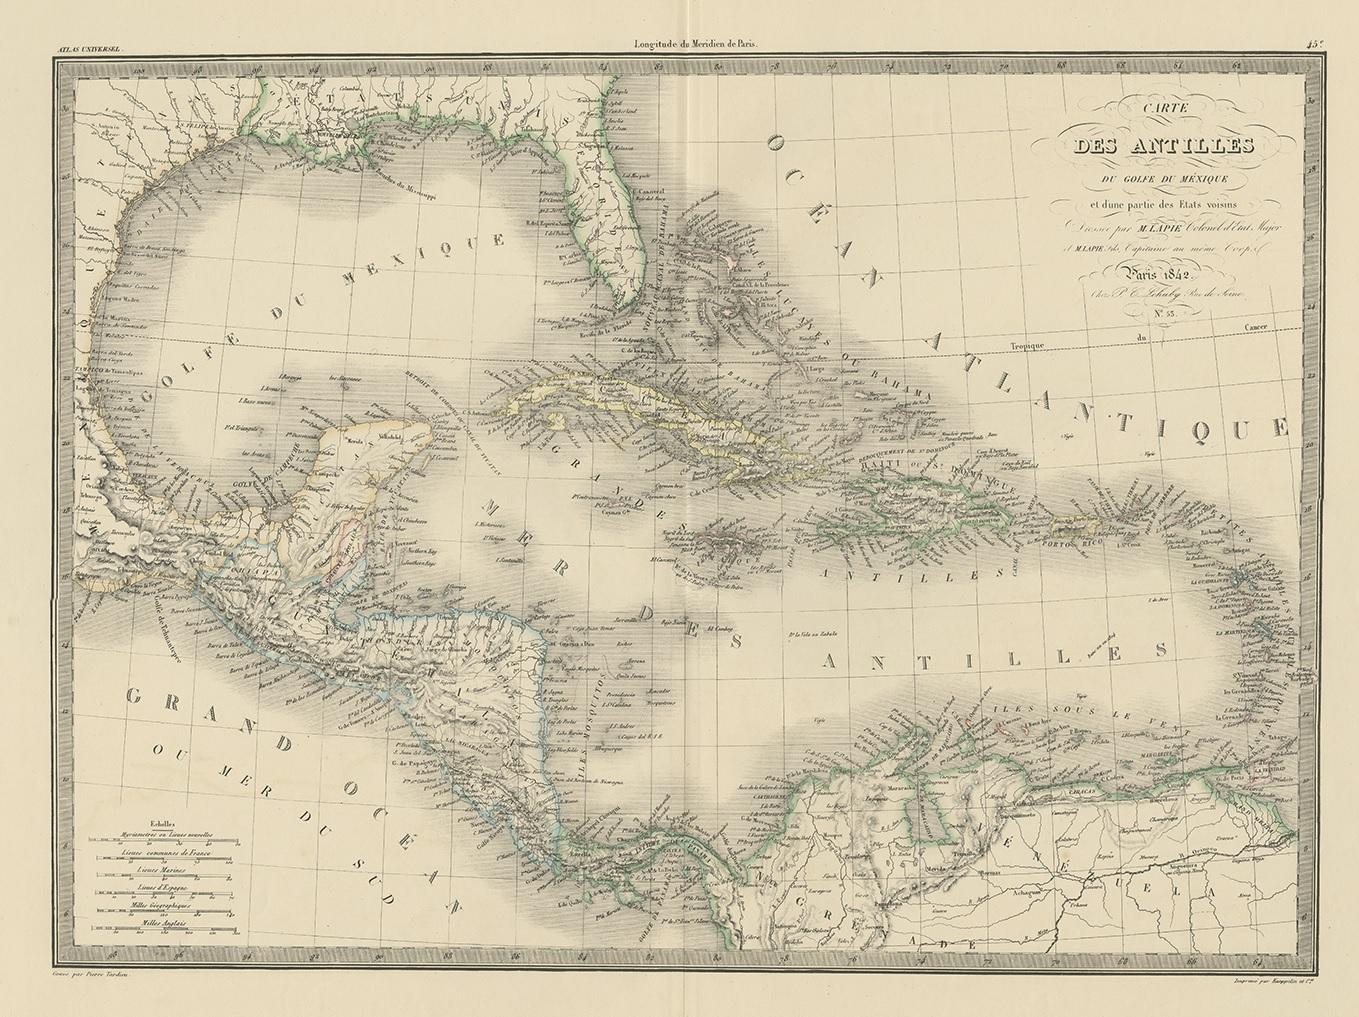 Antique map titled 'Carte des Antilles du Golfe du Méxique'. Map of the Antilles. This map originates from 'Atlas universel de géographie ancienne et moderne (..)' by Pierre M. Lapie and Alexandre E. Lapie. Pierre M. Lapie was a French cartographer